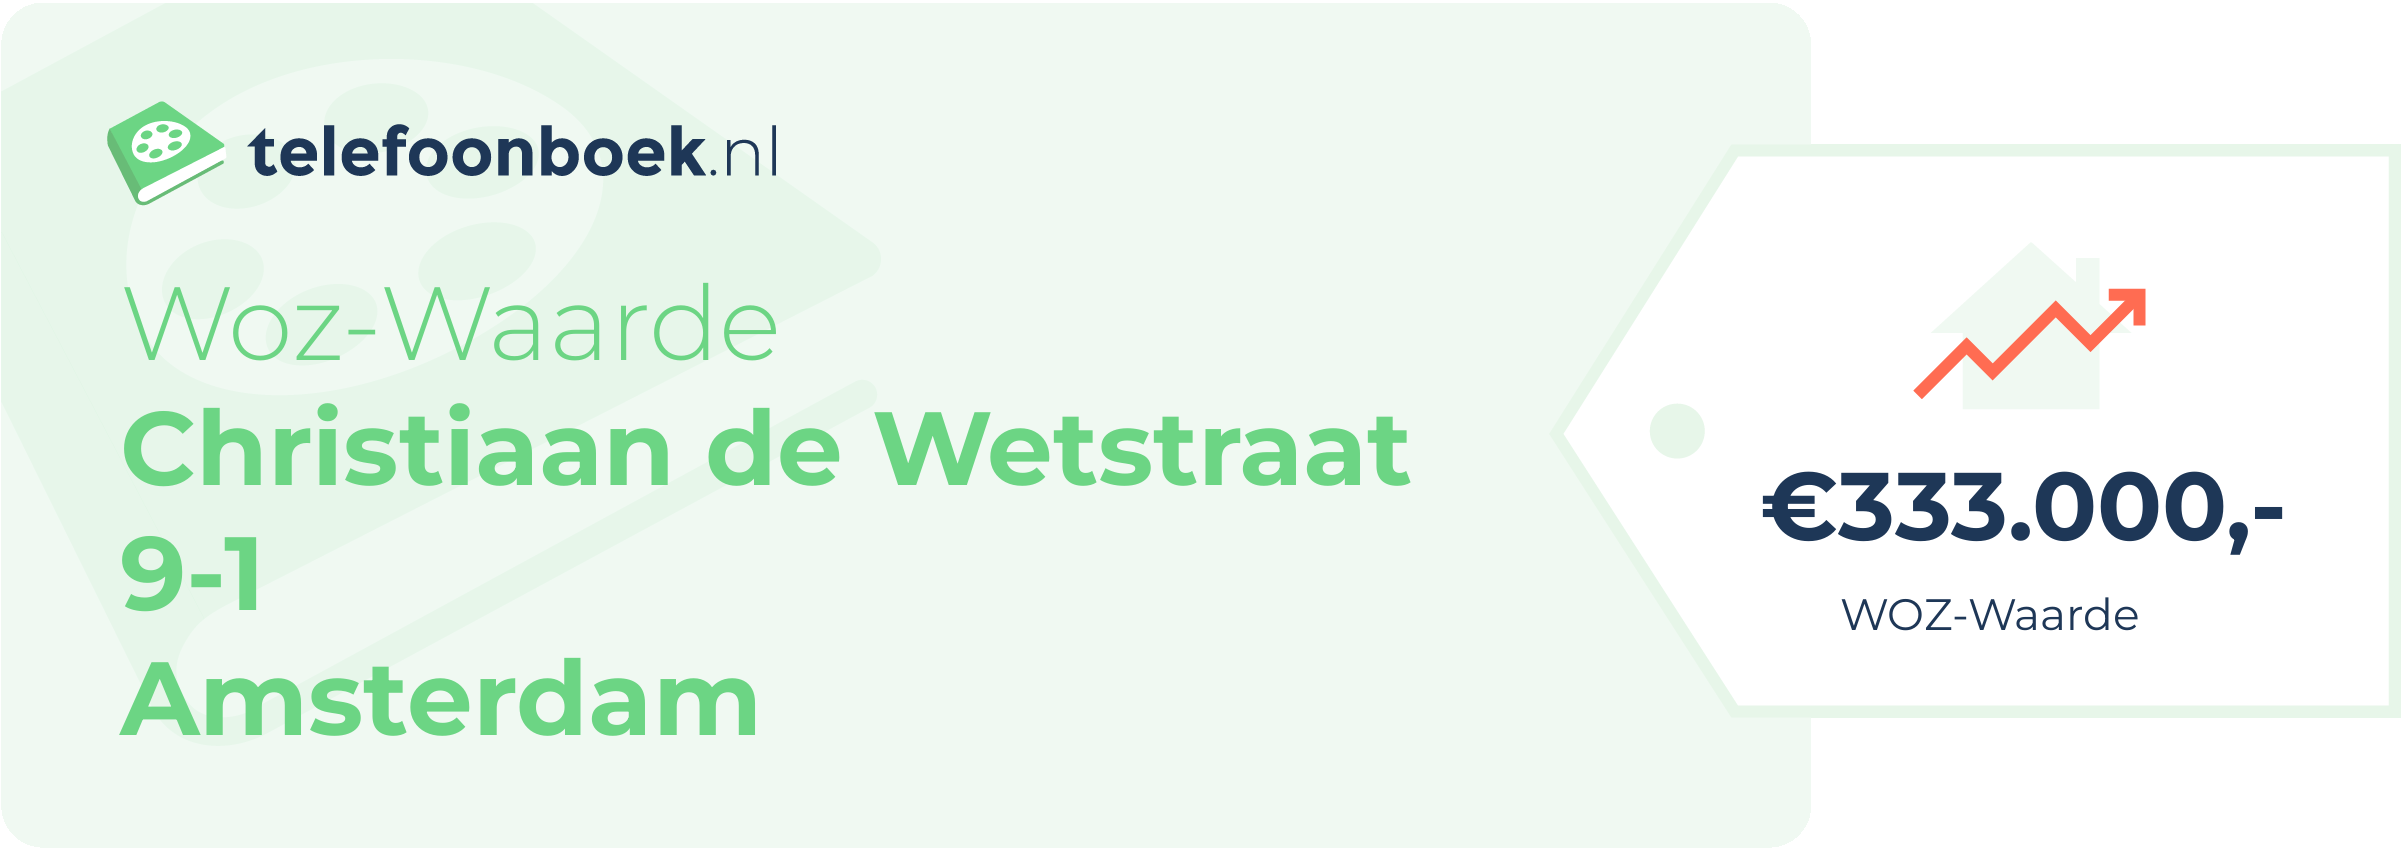 WOZ-waarde Christiaan De Wetstraat 9-1 Amsterdam